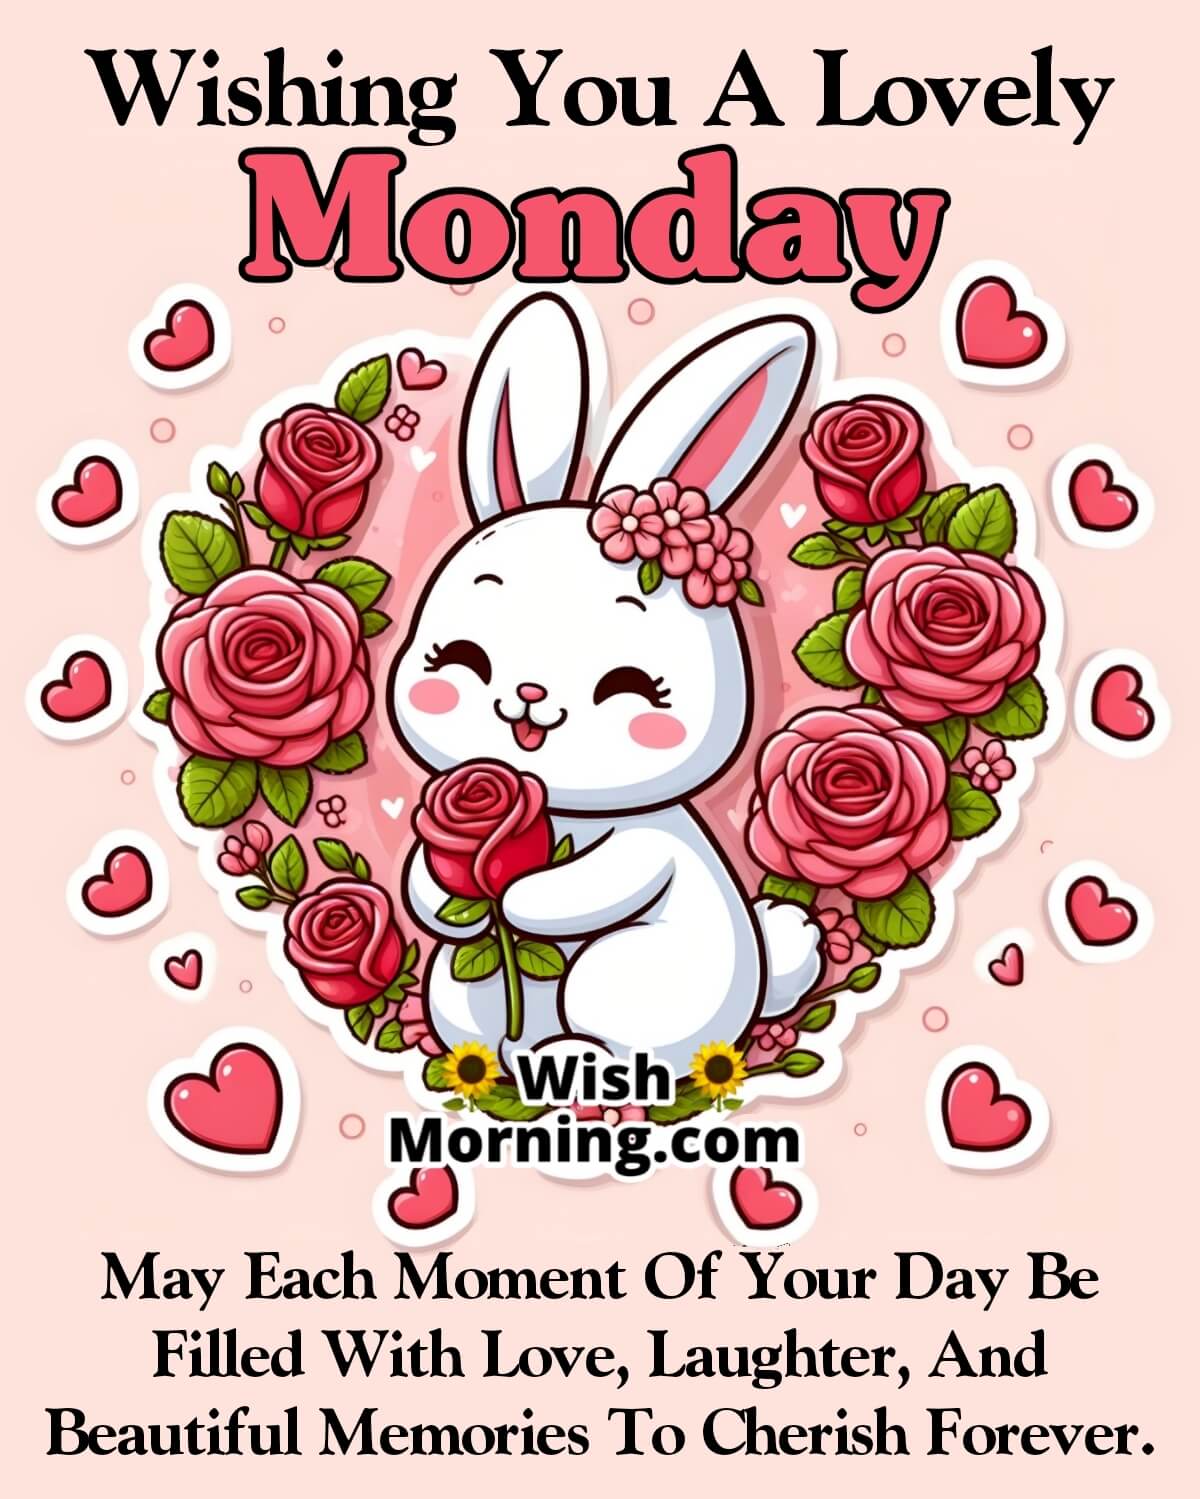 Wishing Lovely Monday Image